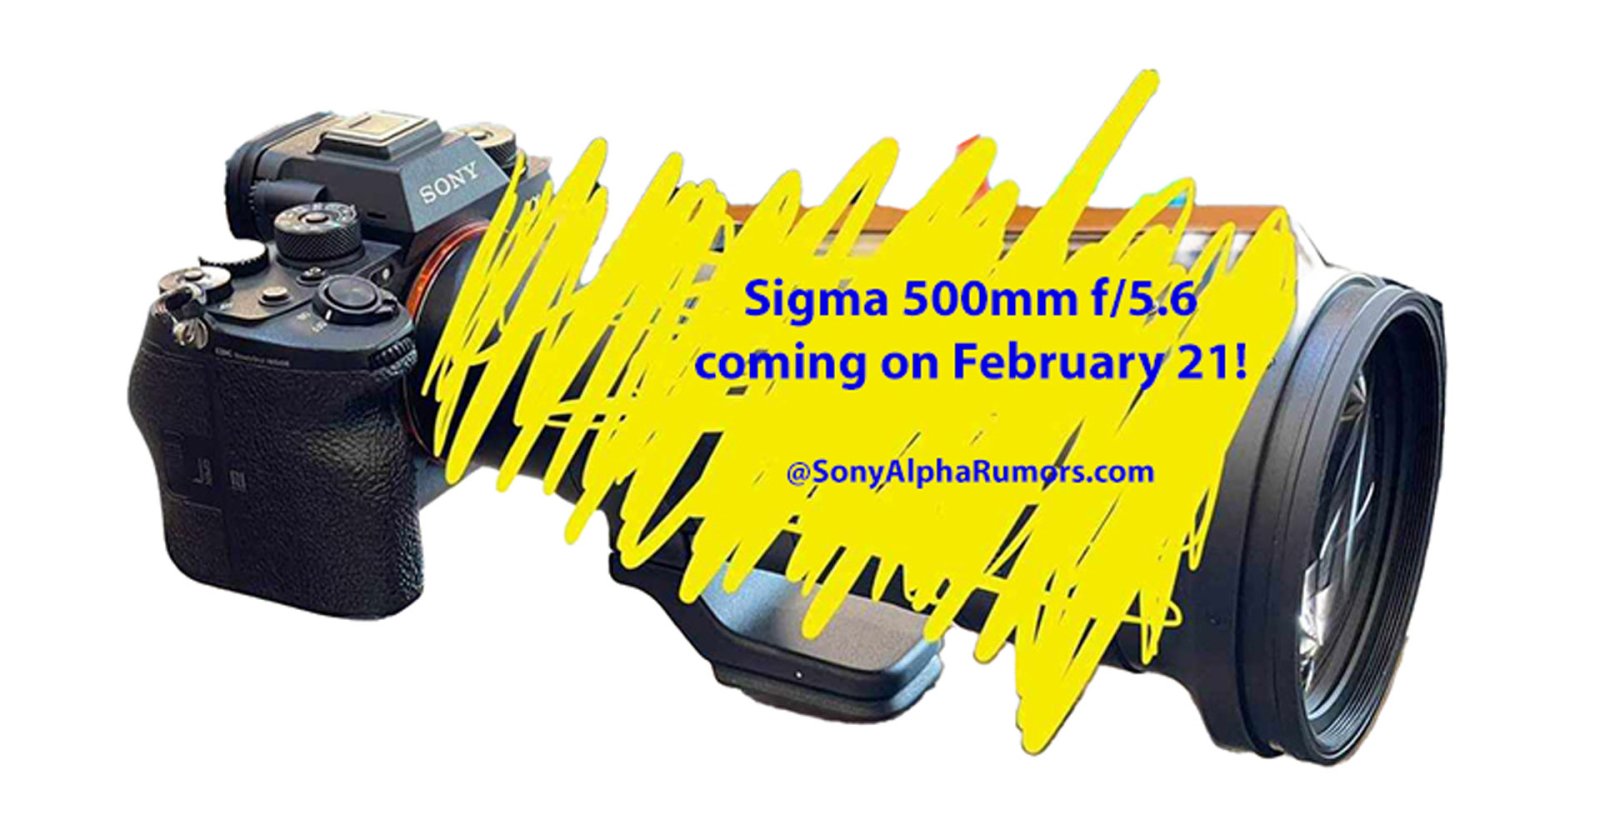 หลุด! SIGMA 500mm F5.6 ช่วงซูเปอร์เทเลโฟโตน้ำหนักเบา เตรียมเปิดตัว 21 กุมภาพันธ์นี้